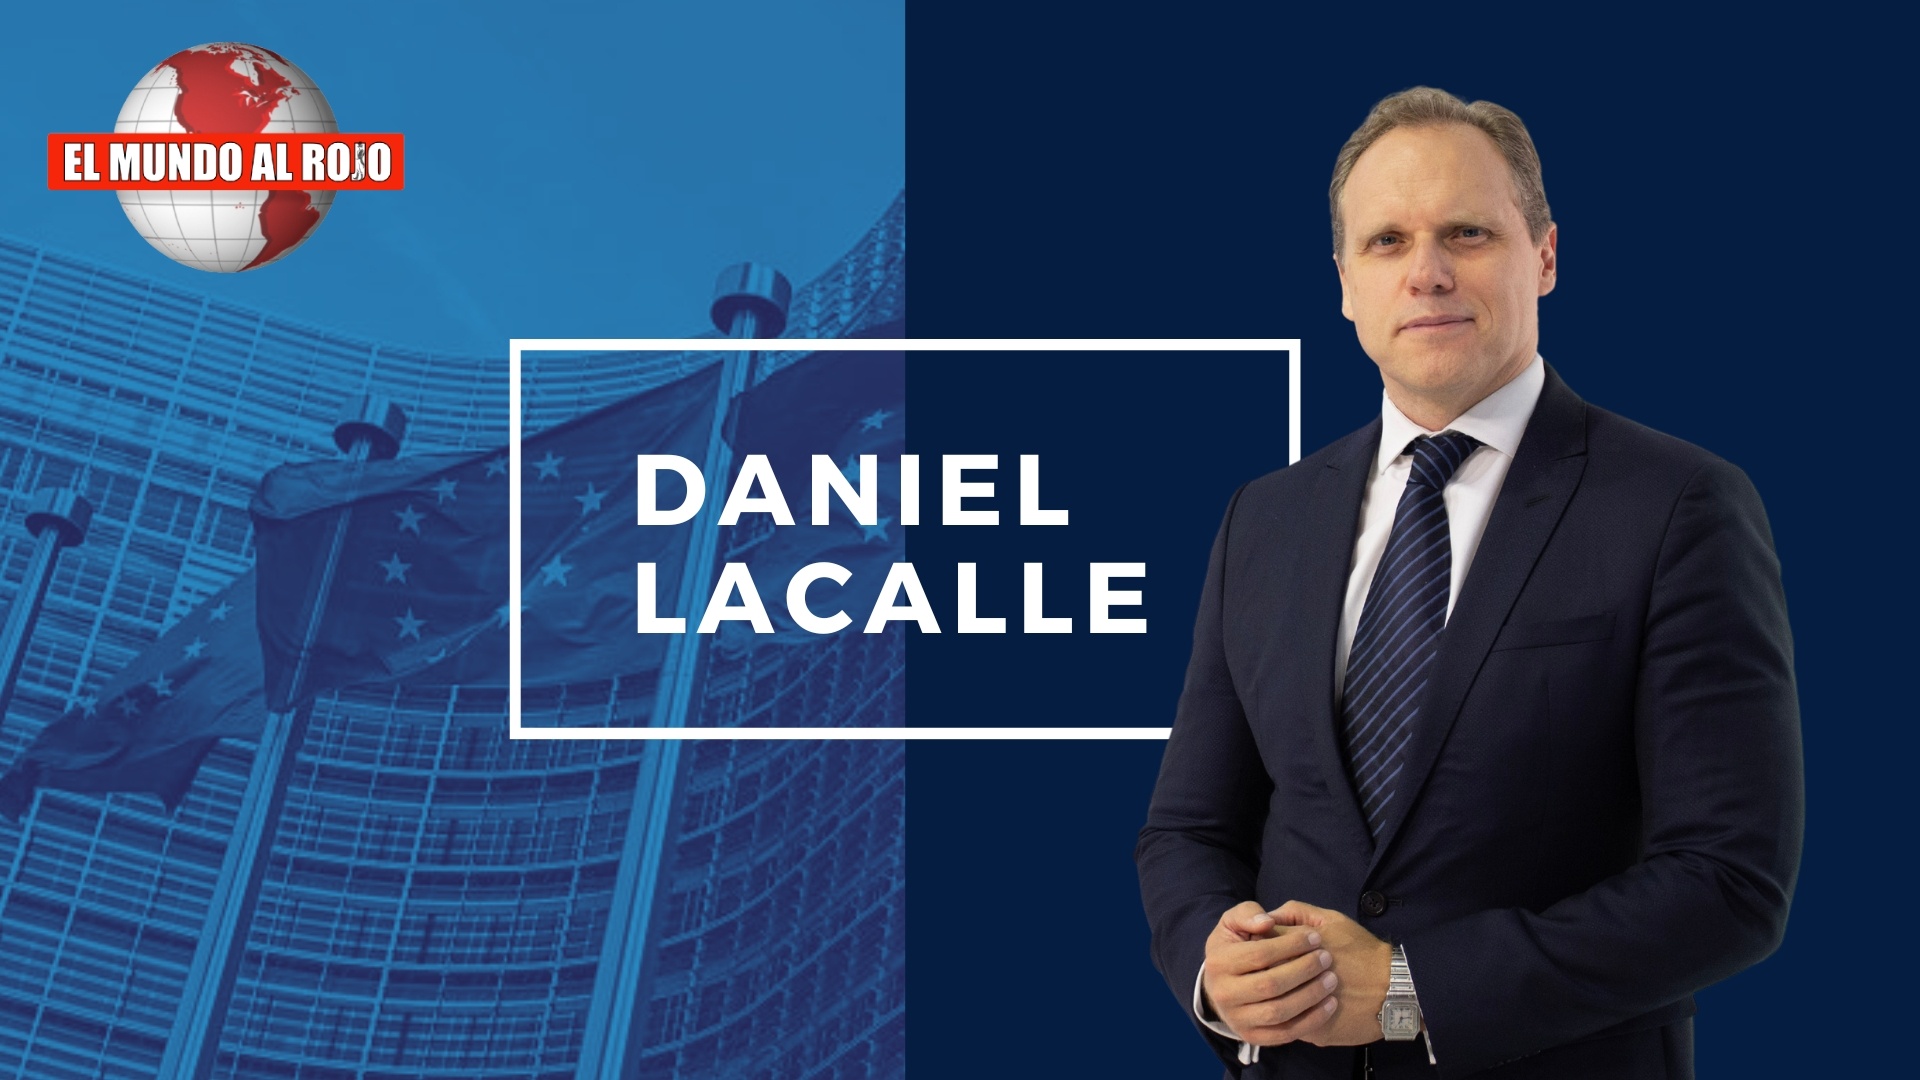 DANIEL LACALLE